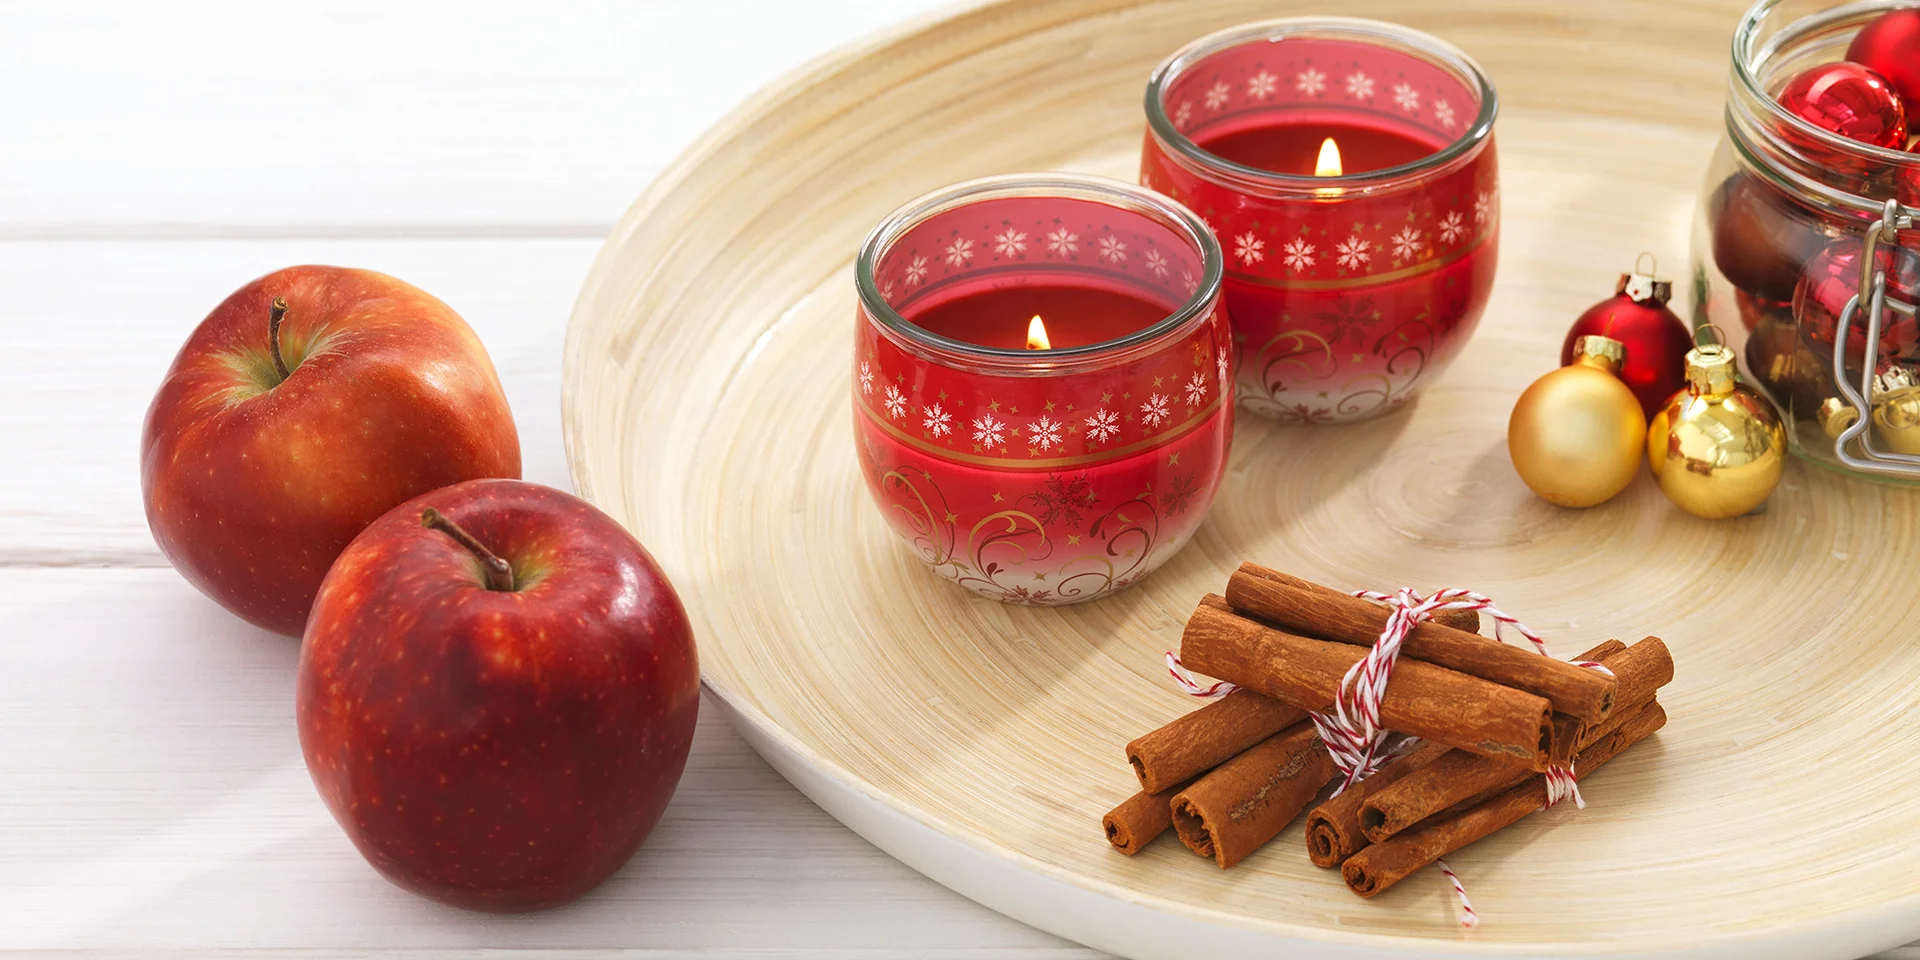 Zwei Weihnachtliche Kerzen auf einer Holzschale, Zimt, kleine Weihnachtskugeln und Äpfel daneben